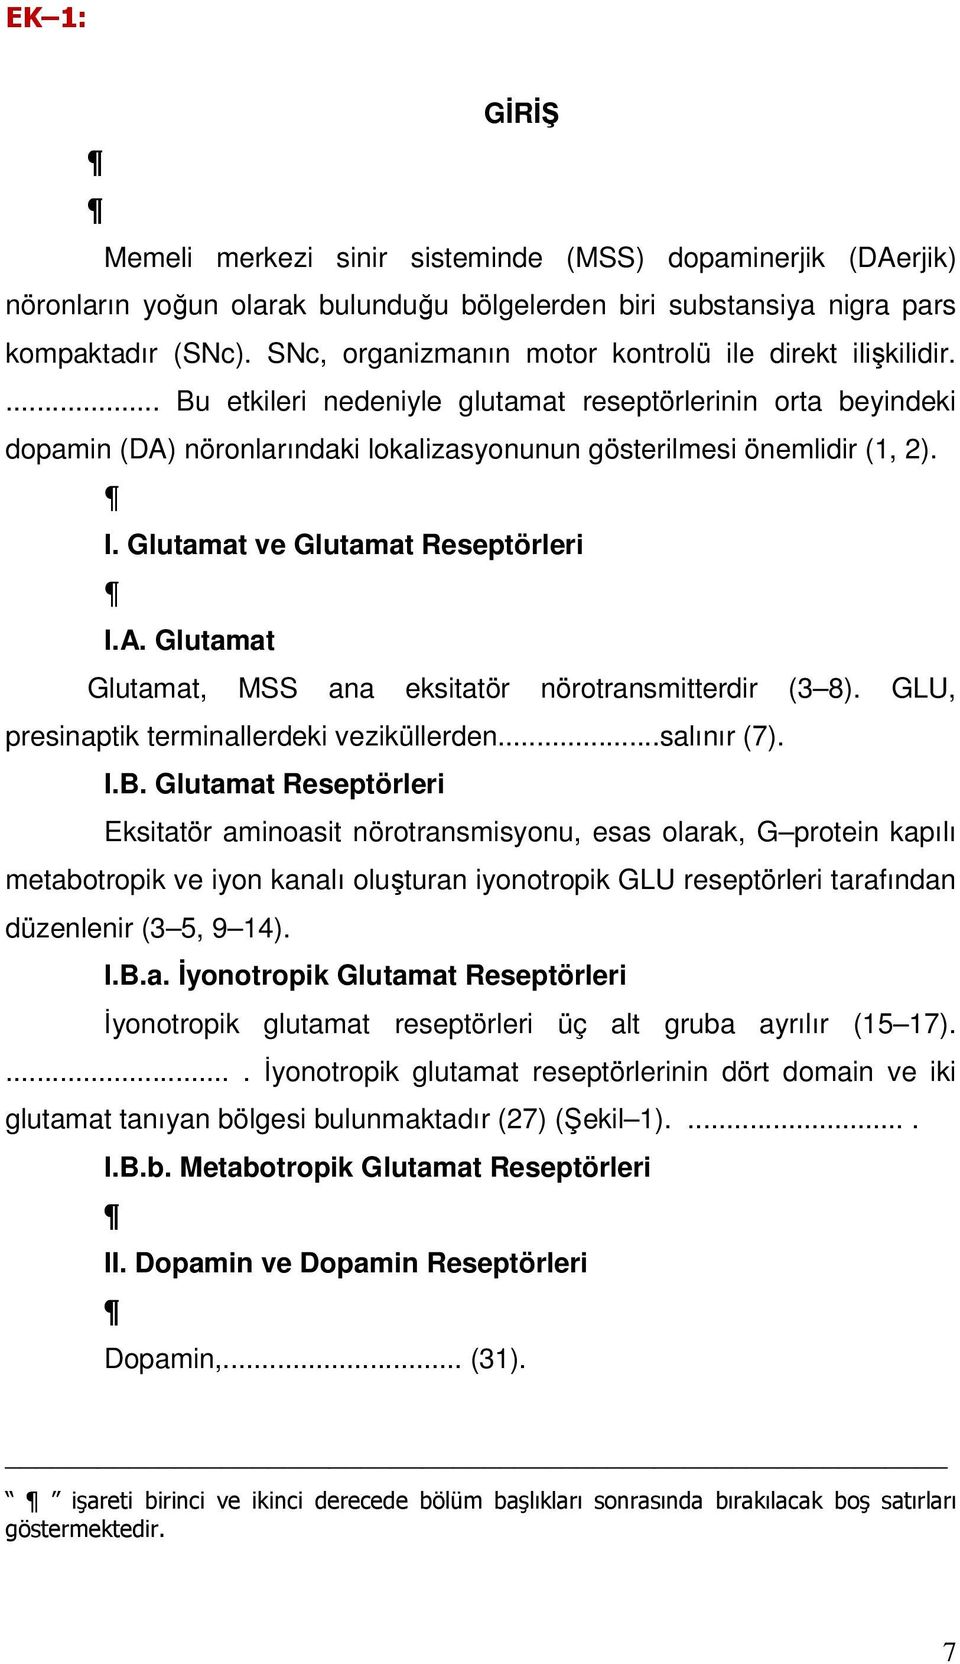 Glutamat ve Glutamat Reseptörleri I.A. Glutamat Glutamat, MSS ana eksitatör nörotransmitterdir (3 8). GLU, presinaptik terminallerdeki veziküllerden...salınır (7). I.B.